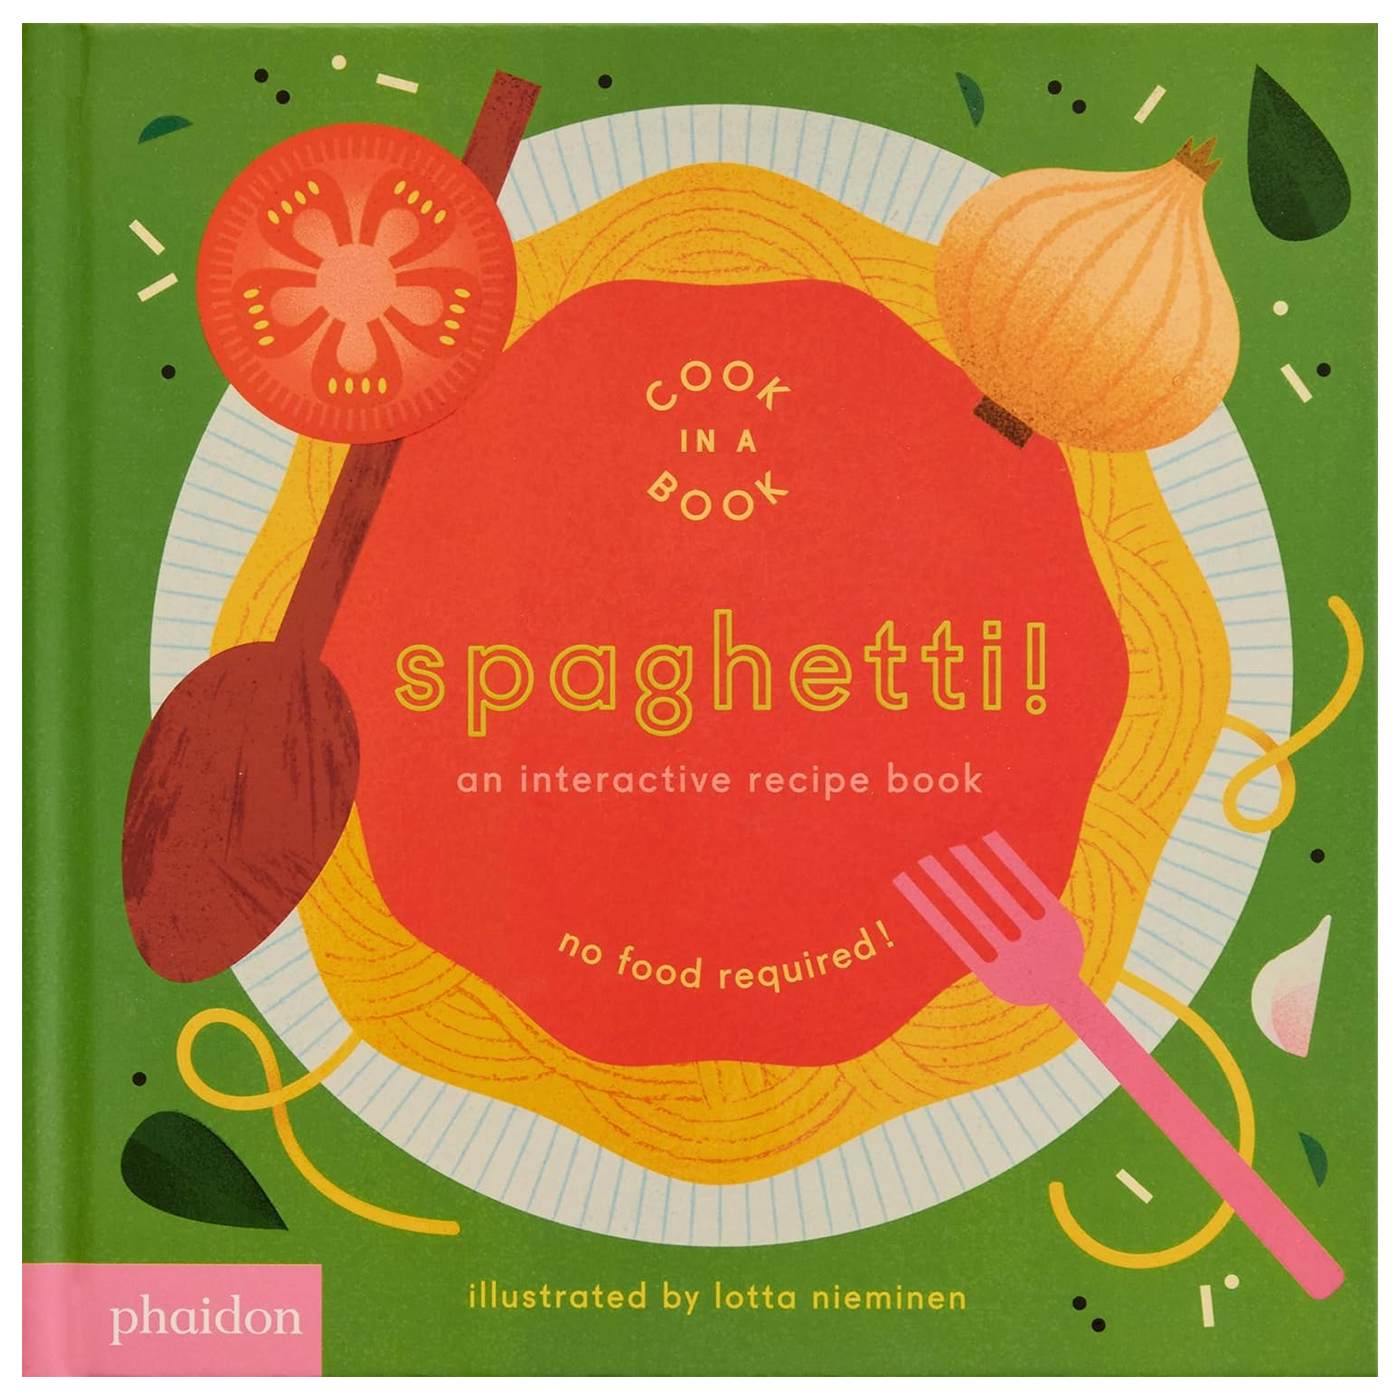 PHAIDON Cook in a Book: Spaghetti!